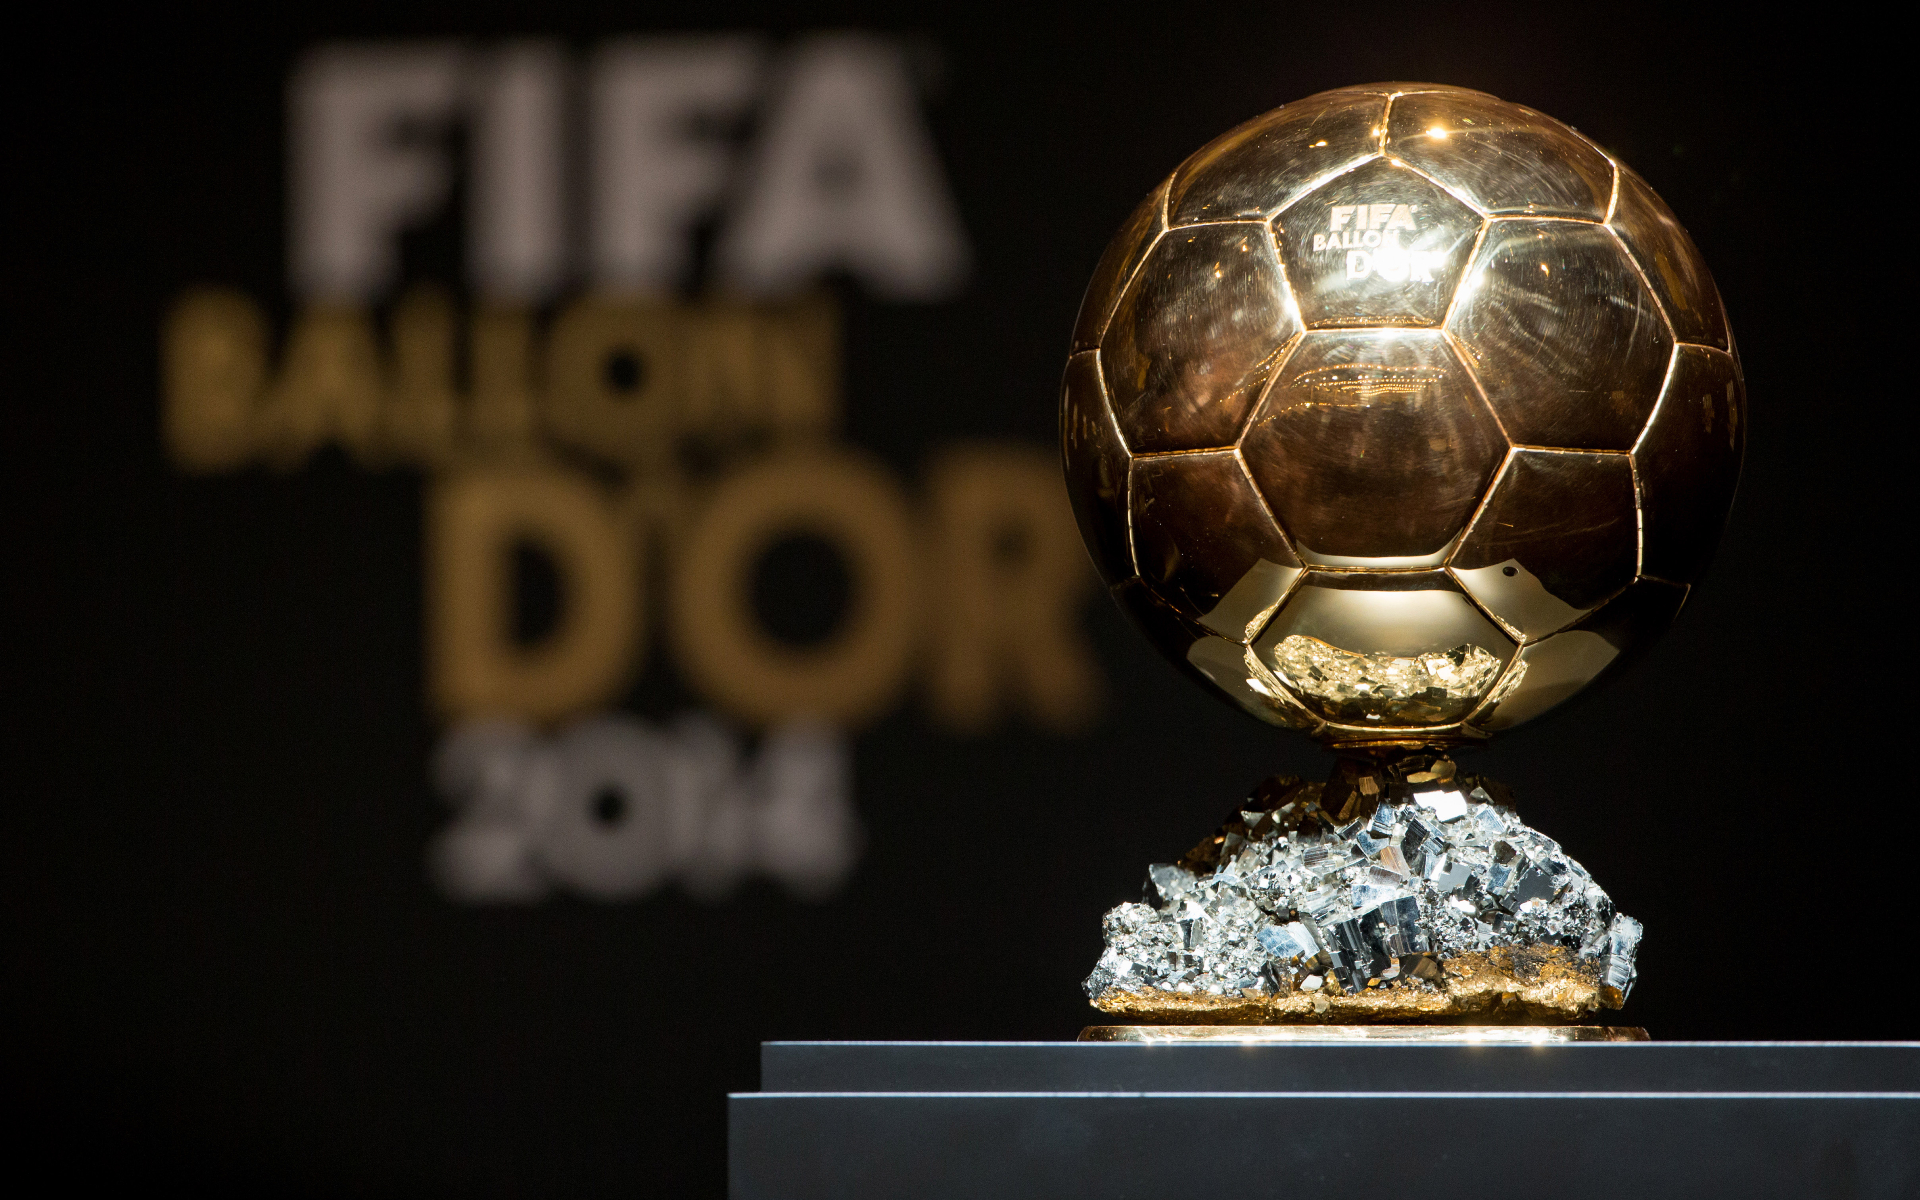 Приз лучшему футболисту мира «Золотой мяч» будут вручать по итогам сезона